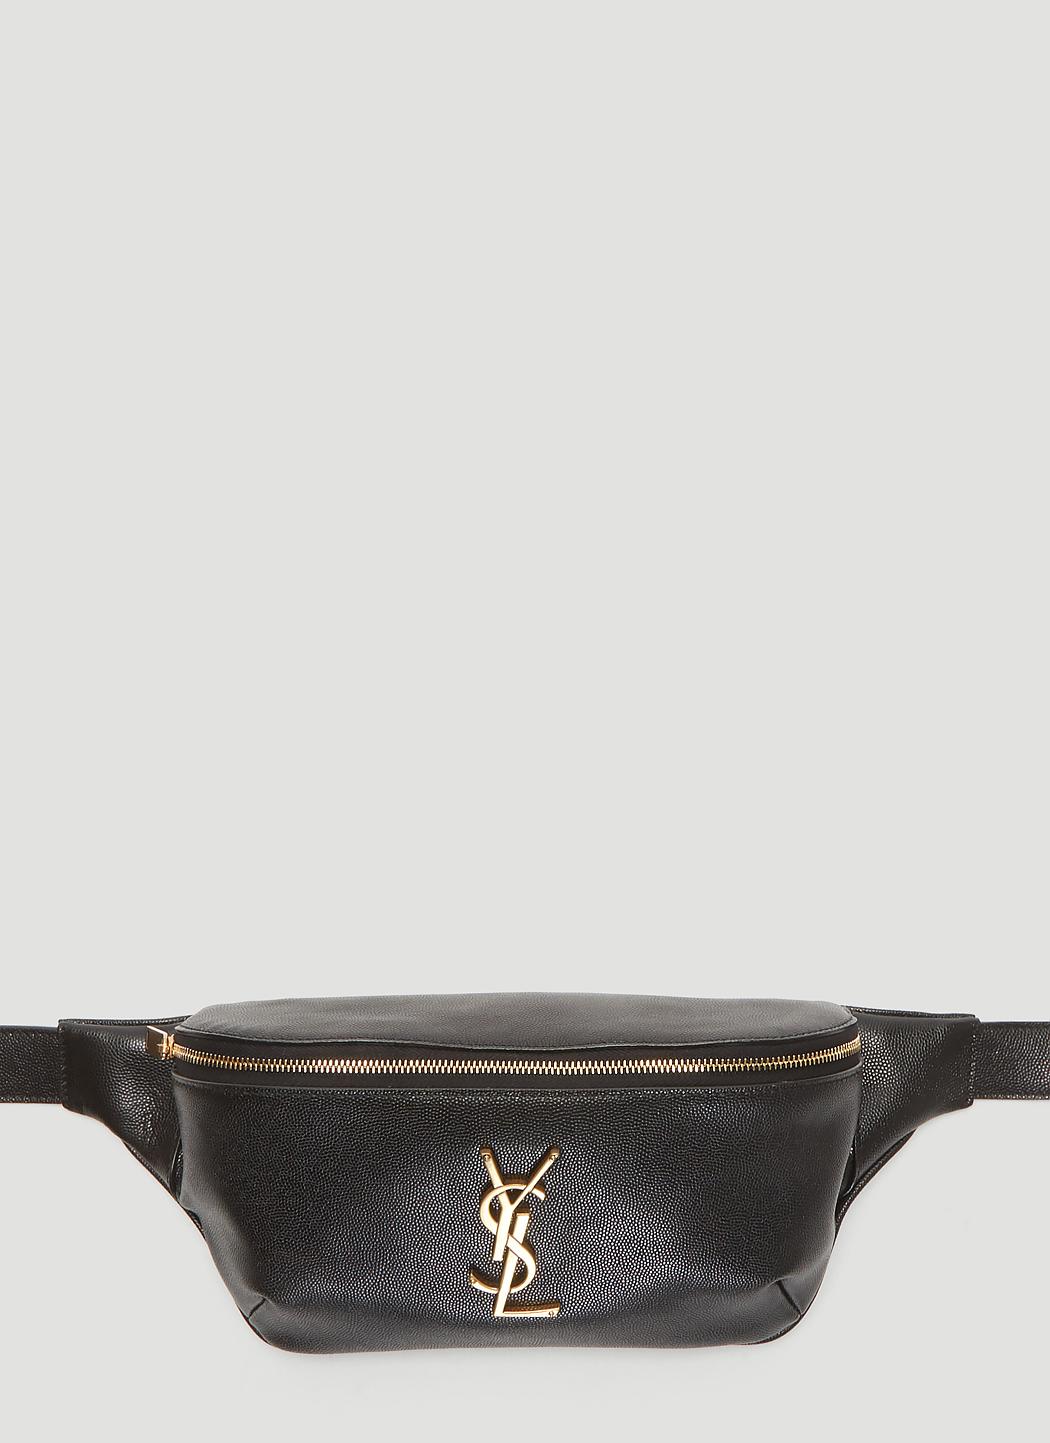 Saint Laurent Classic Monogram Leather Belt Bag in Black | Lyst Canada